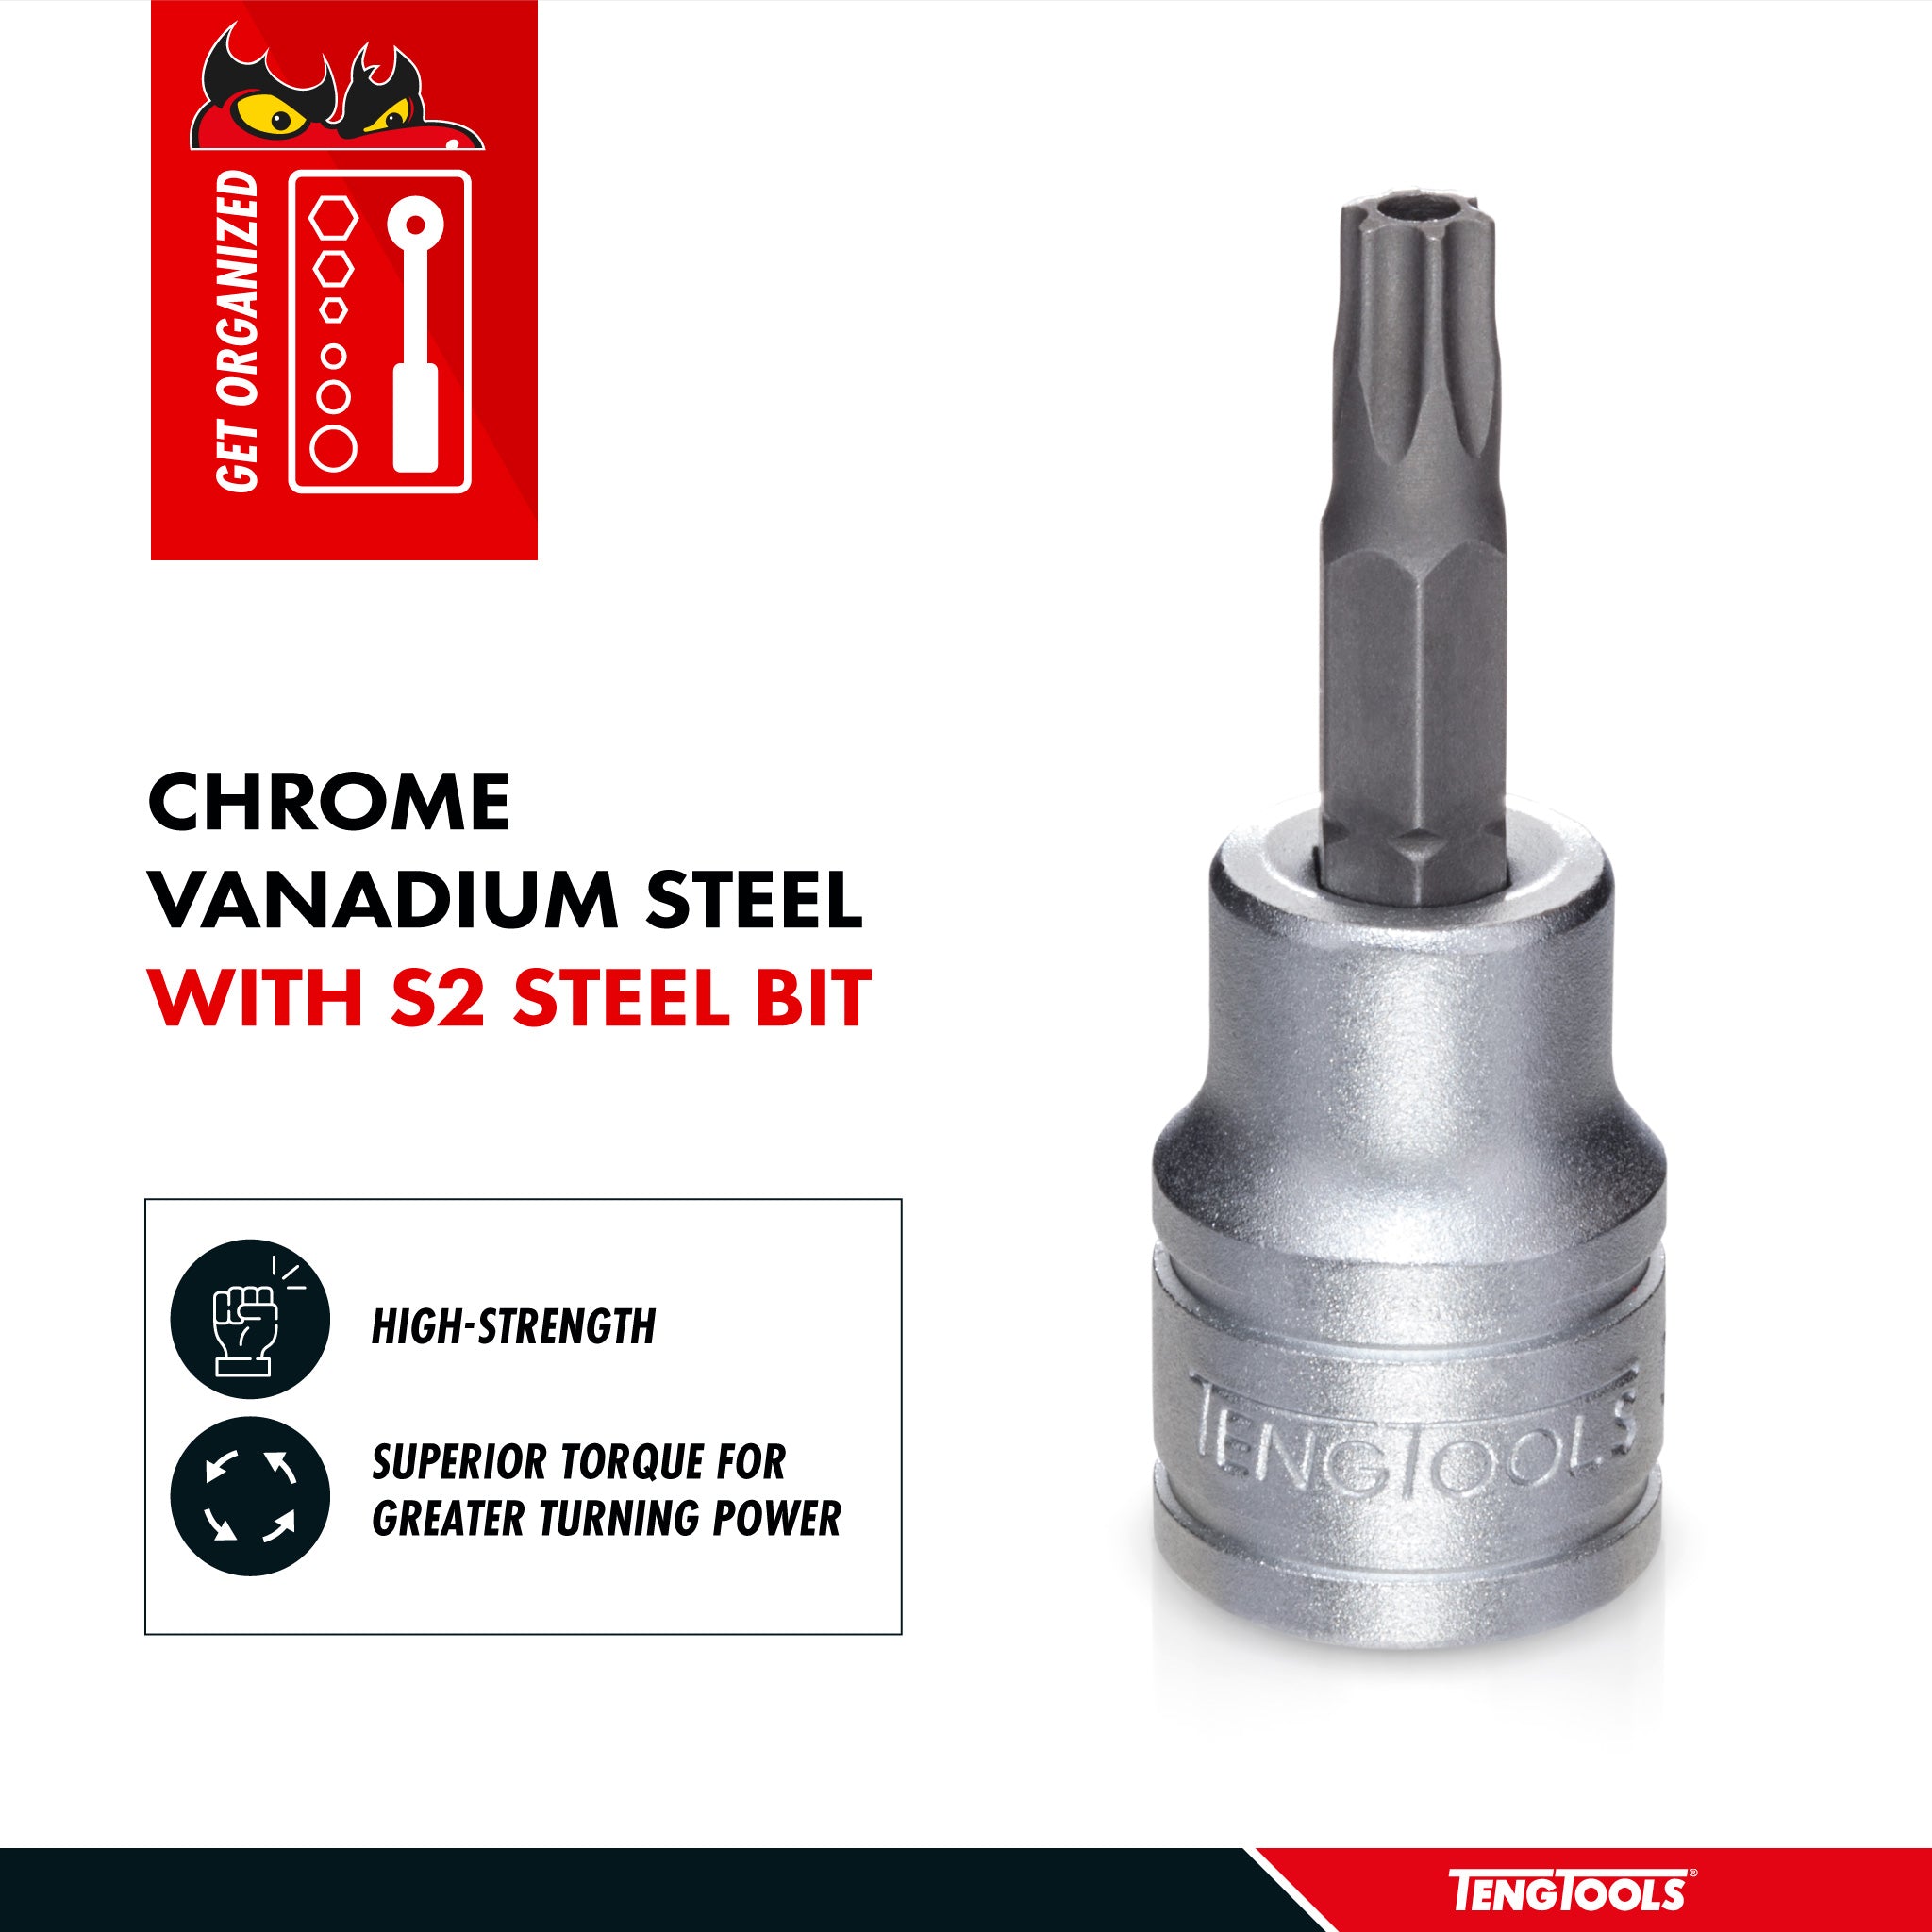 Teng Tools 1/2 Inch Drive Tamper Proof Torx TPX Chrome Vanadium Sockets - TPX30